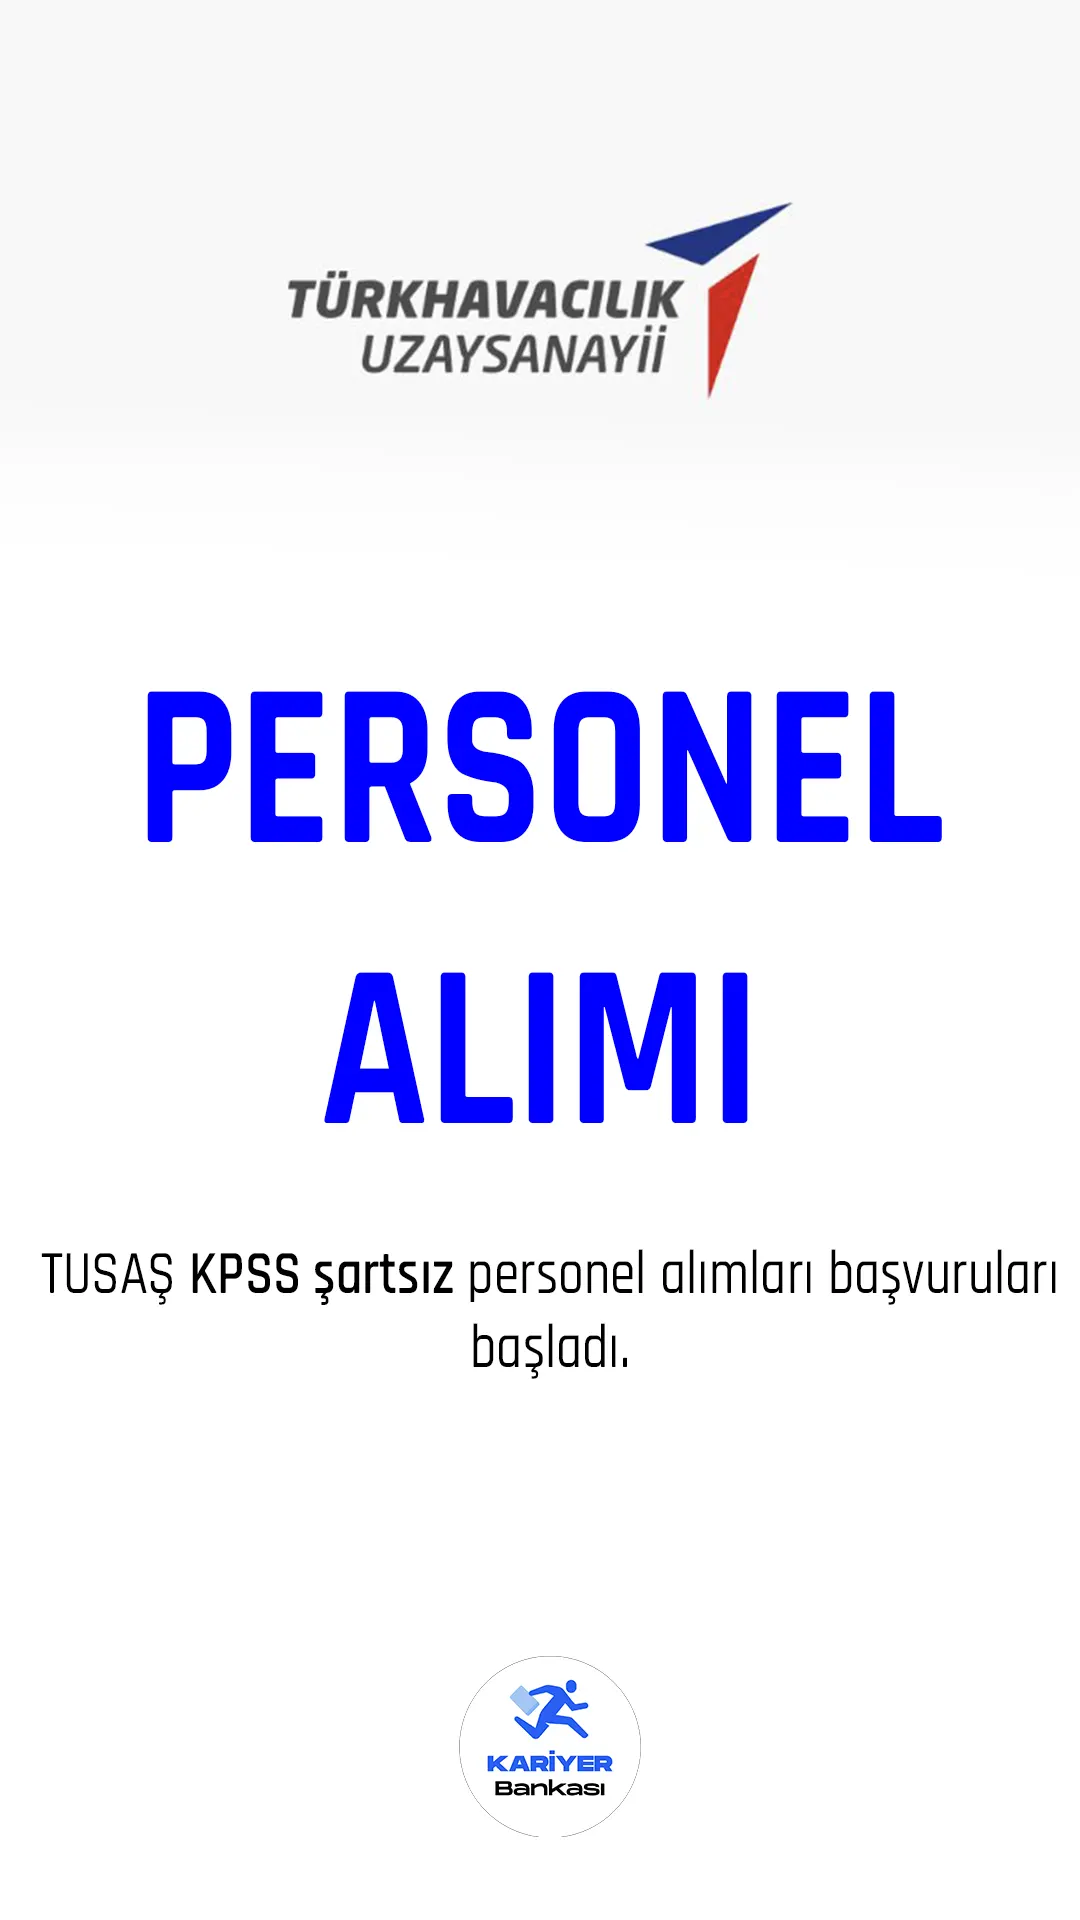 TUSAŞ KPSS şartsız personel alımı duyuruları yayımlandı.